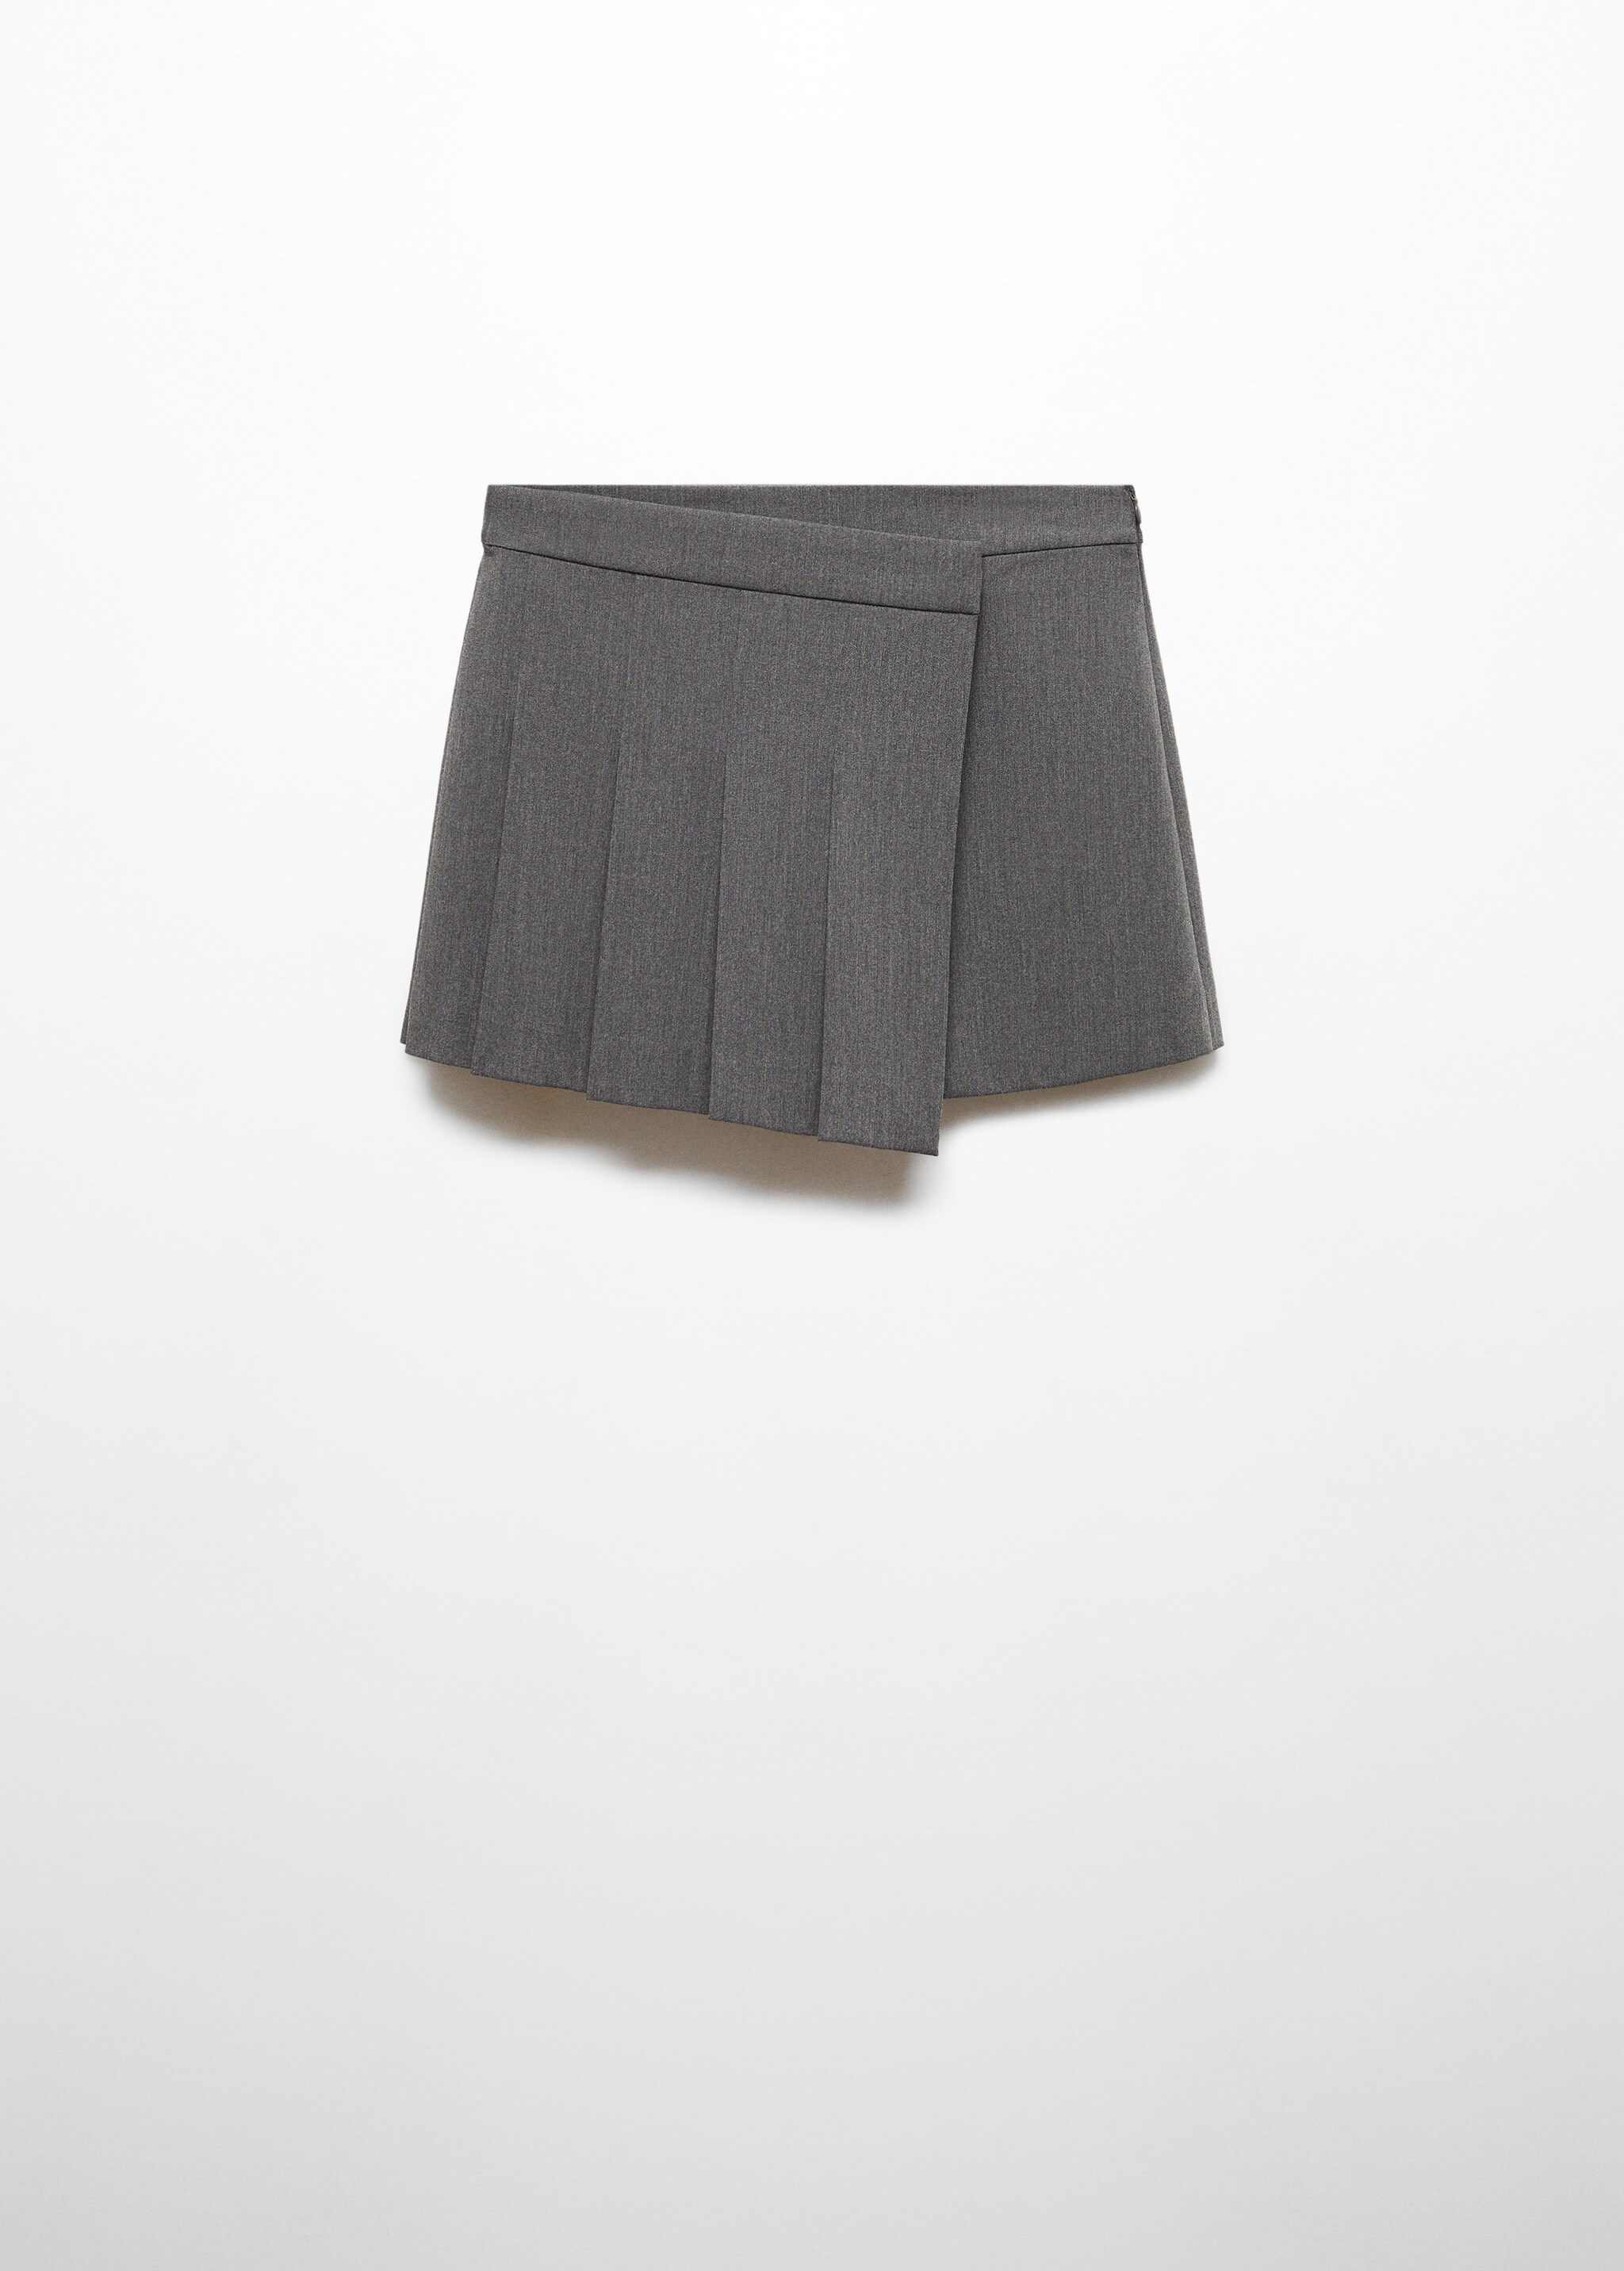 Falda pantalón tablas - Artículo sin modelo